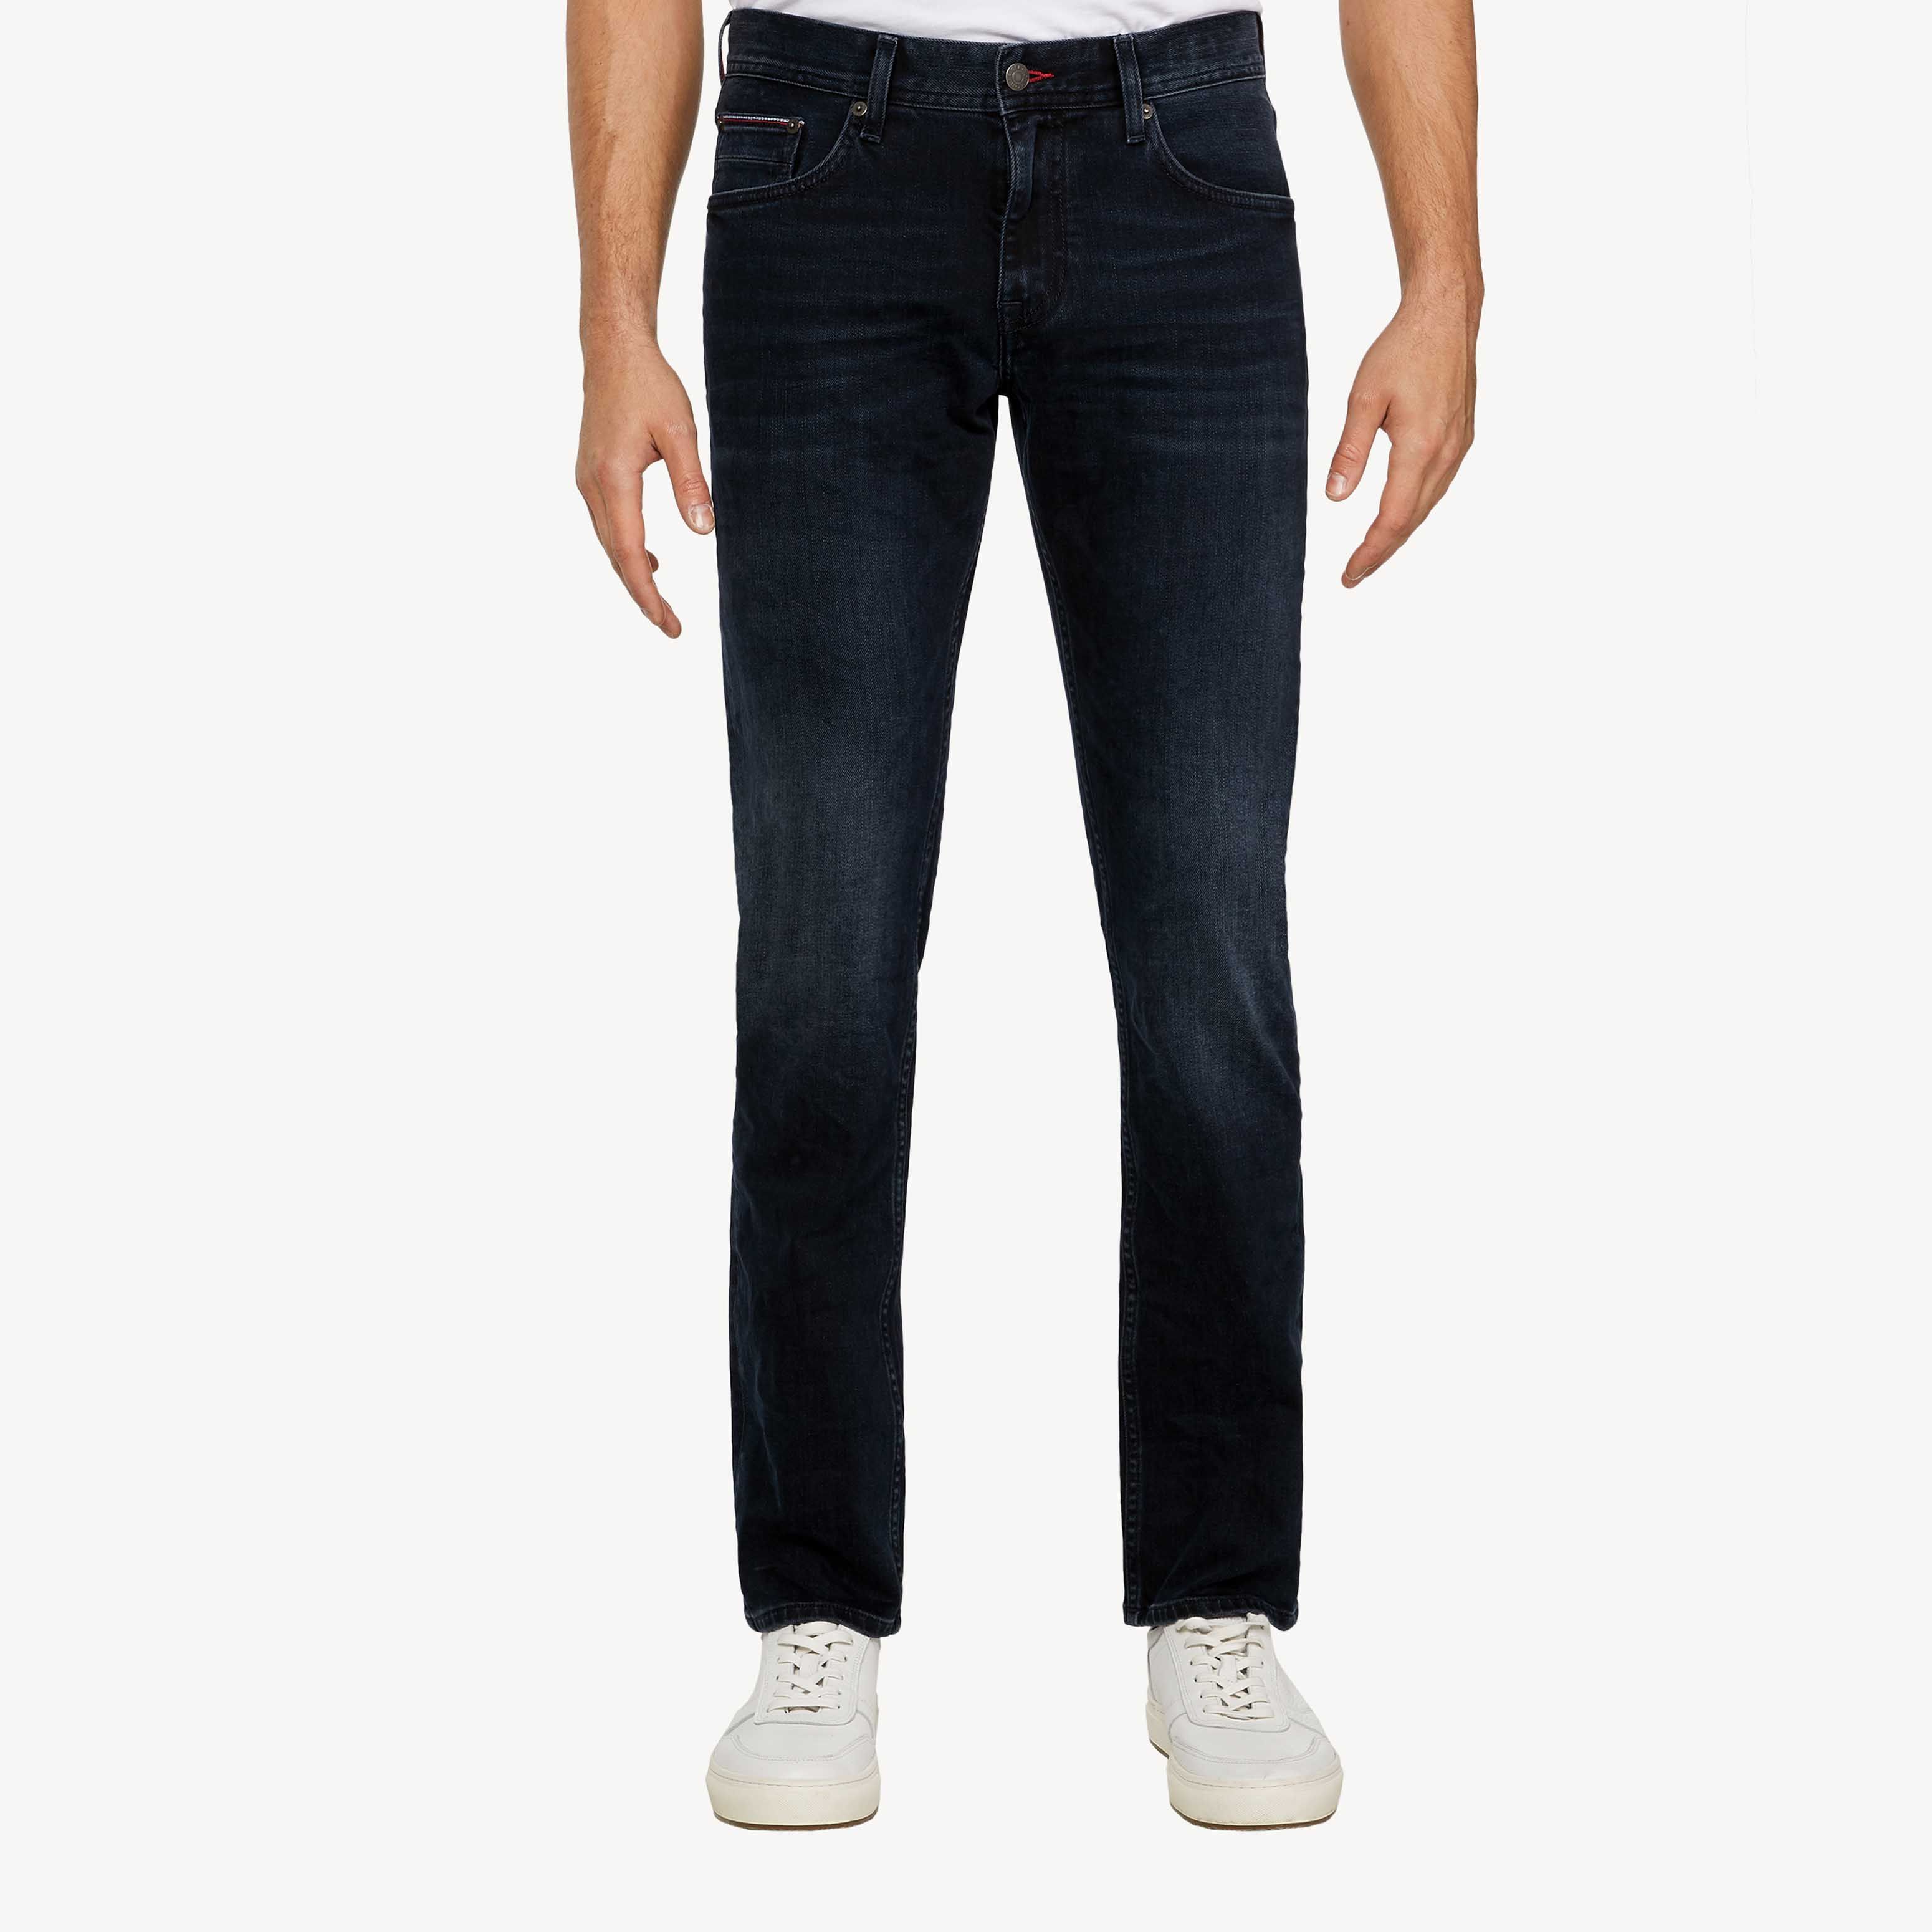 hilfiger mercer regular fit jeans